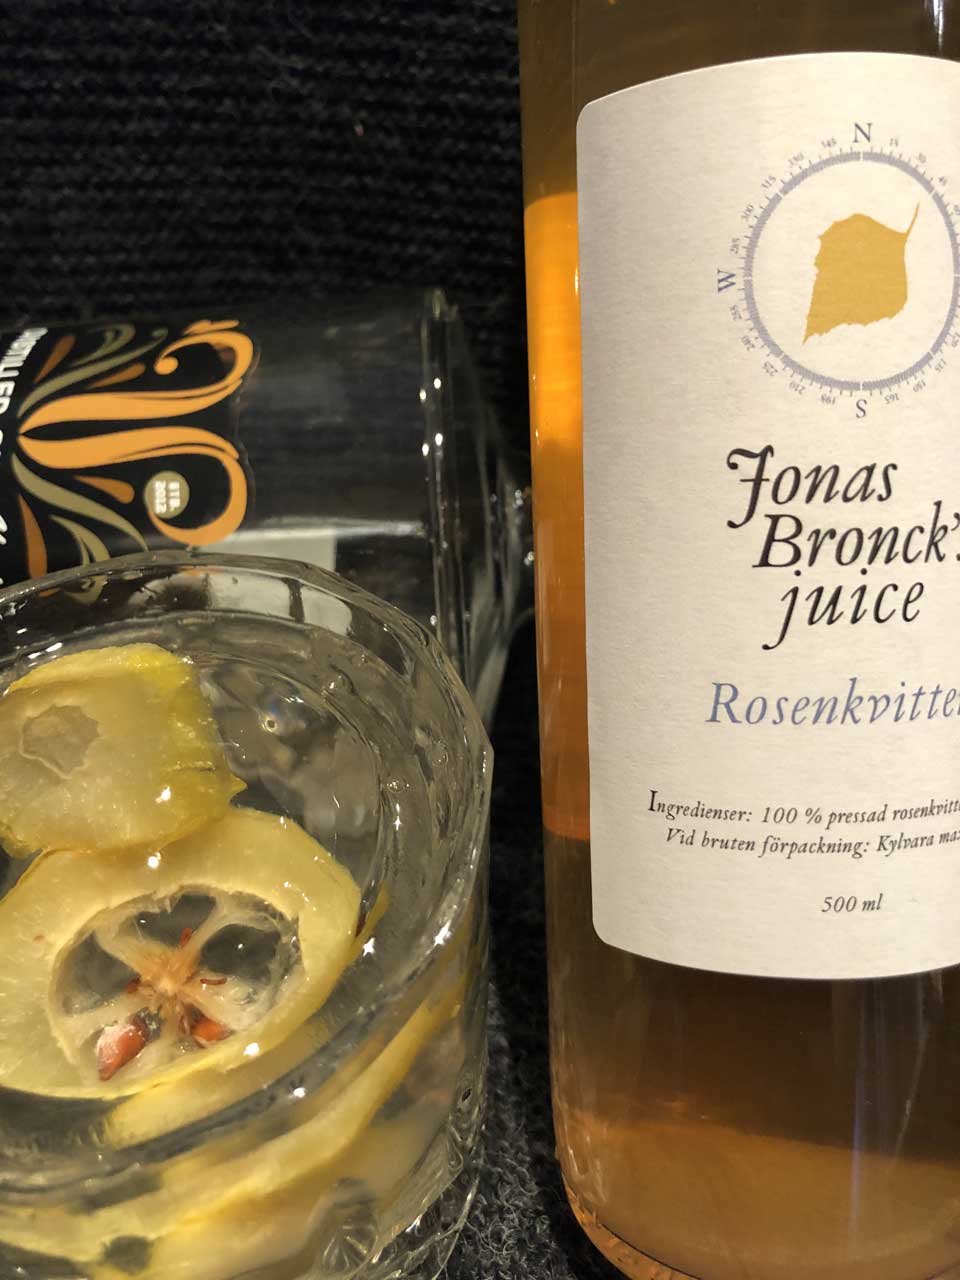 Flaska Jonas Broncks Rosenkvitten bredvid ett glas med citron skivor